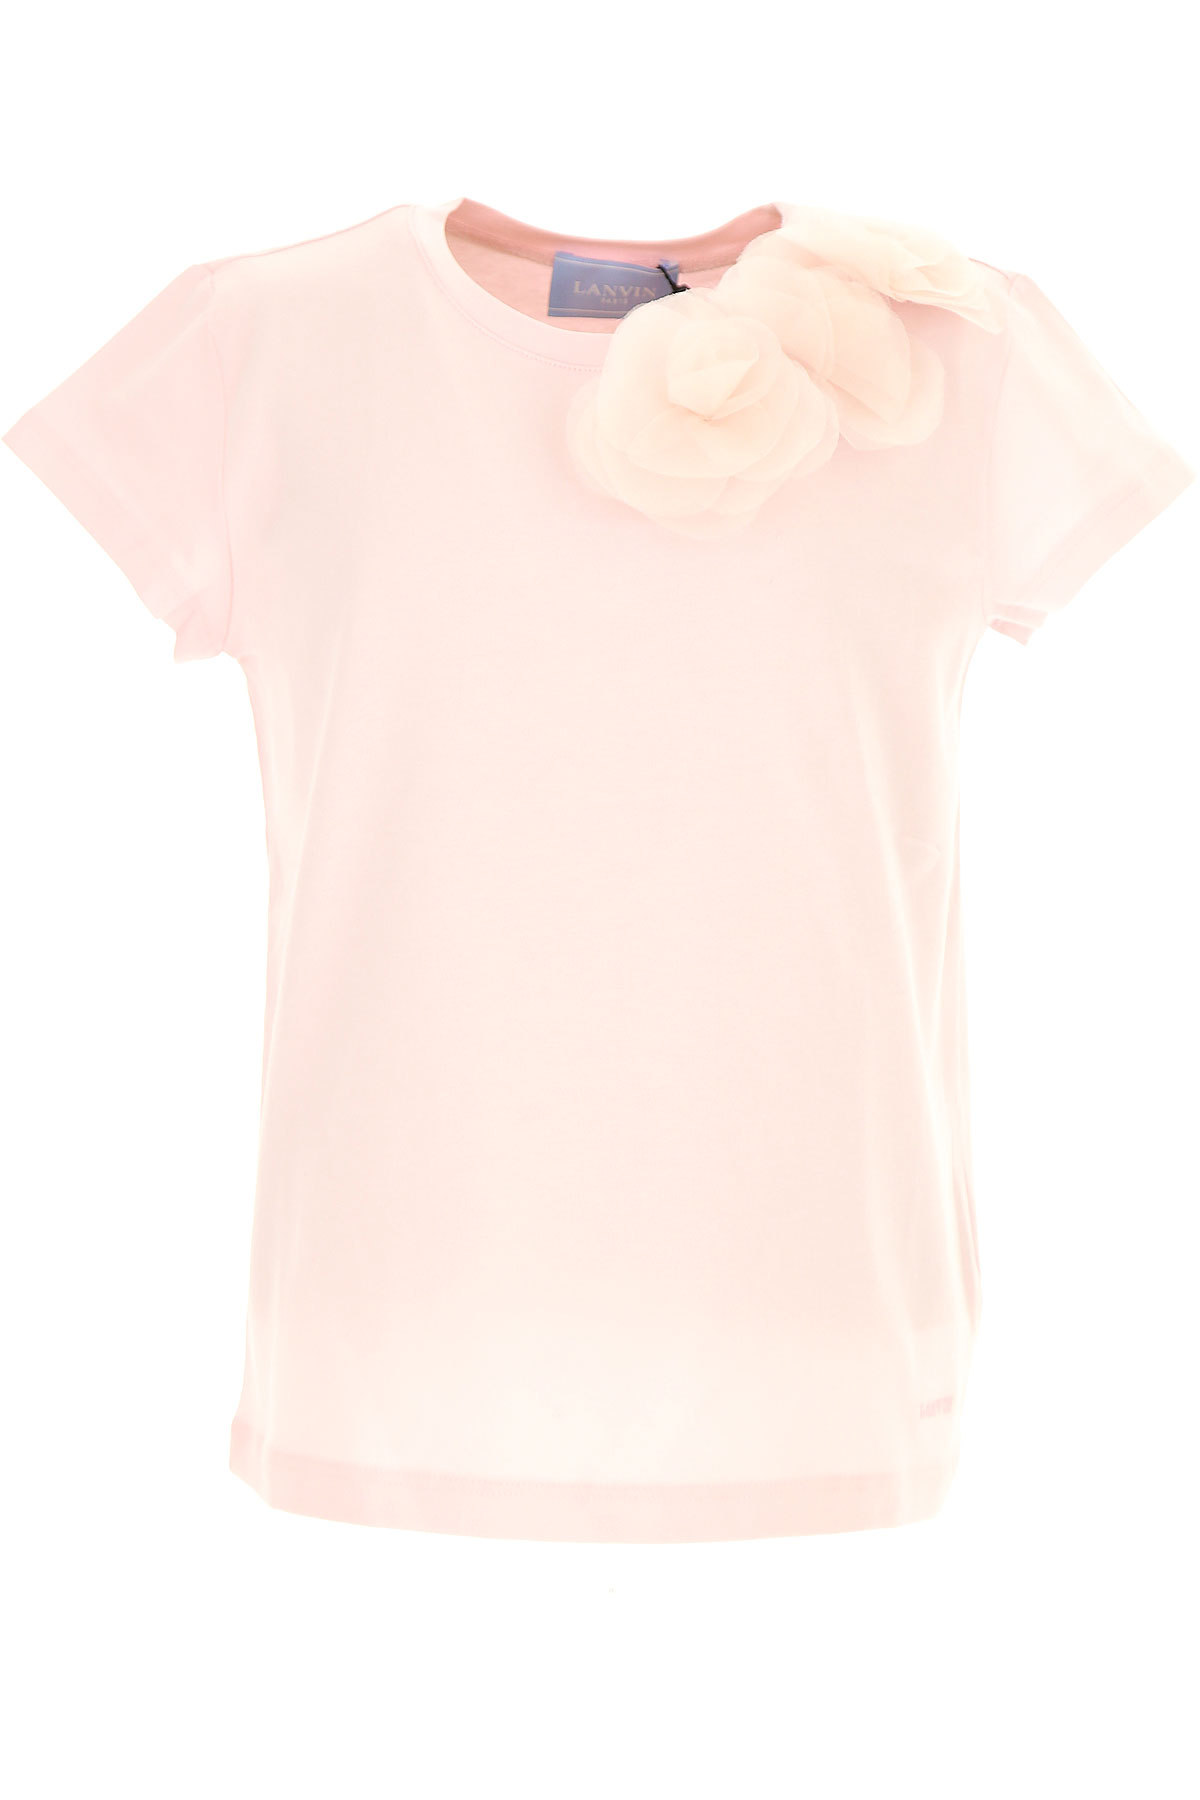 Lanvin Kinder T-Shirt für Mädchen Günstig im Outlet Sale, Pink, Baumwolle, 2017, 10Y 4Y 6Y